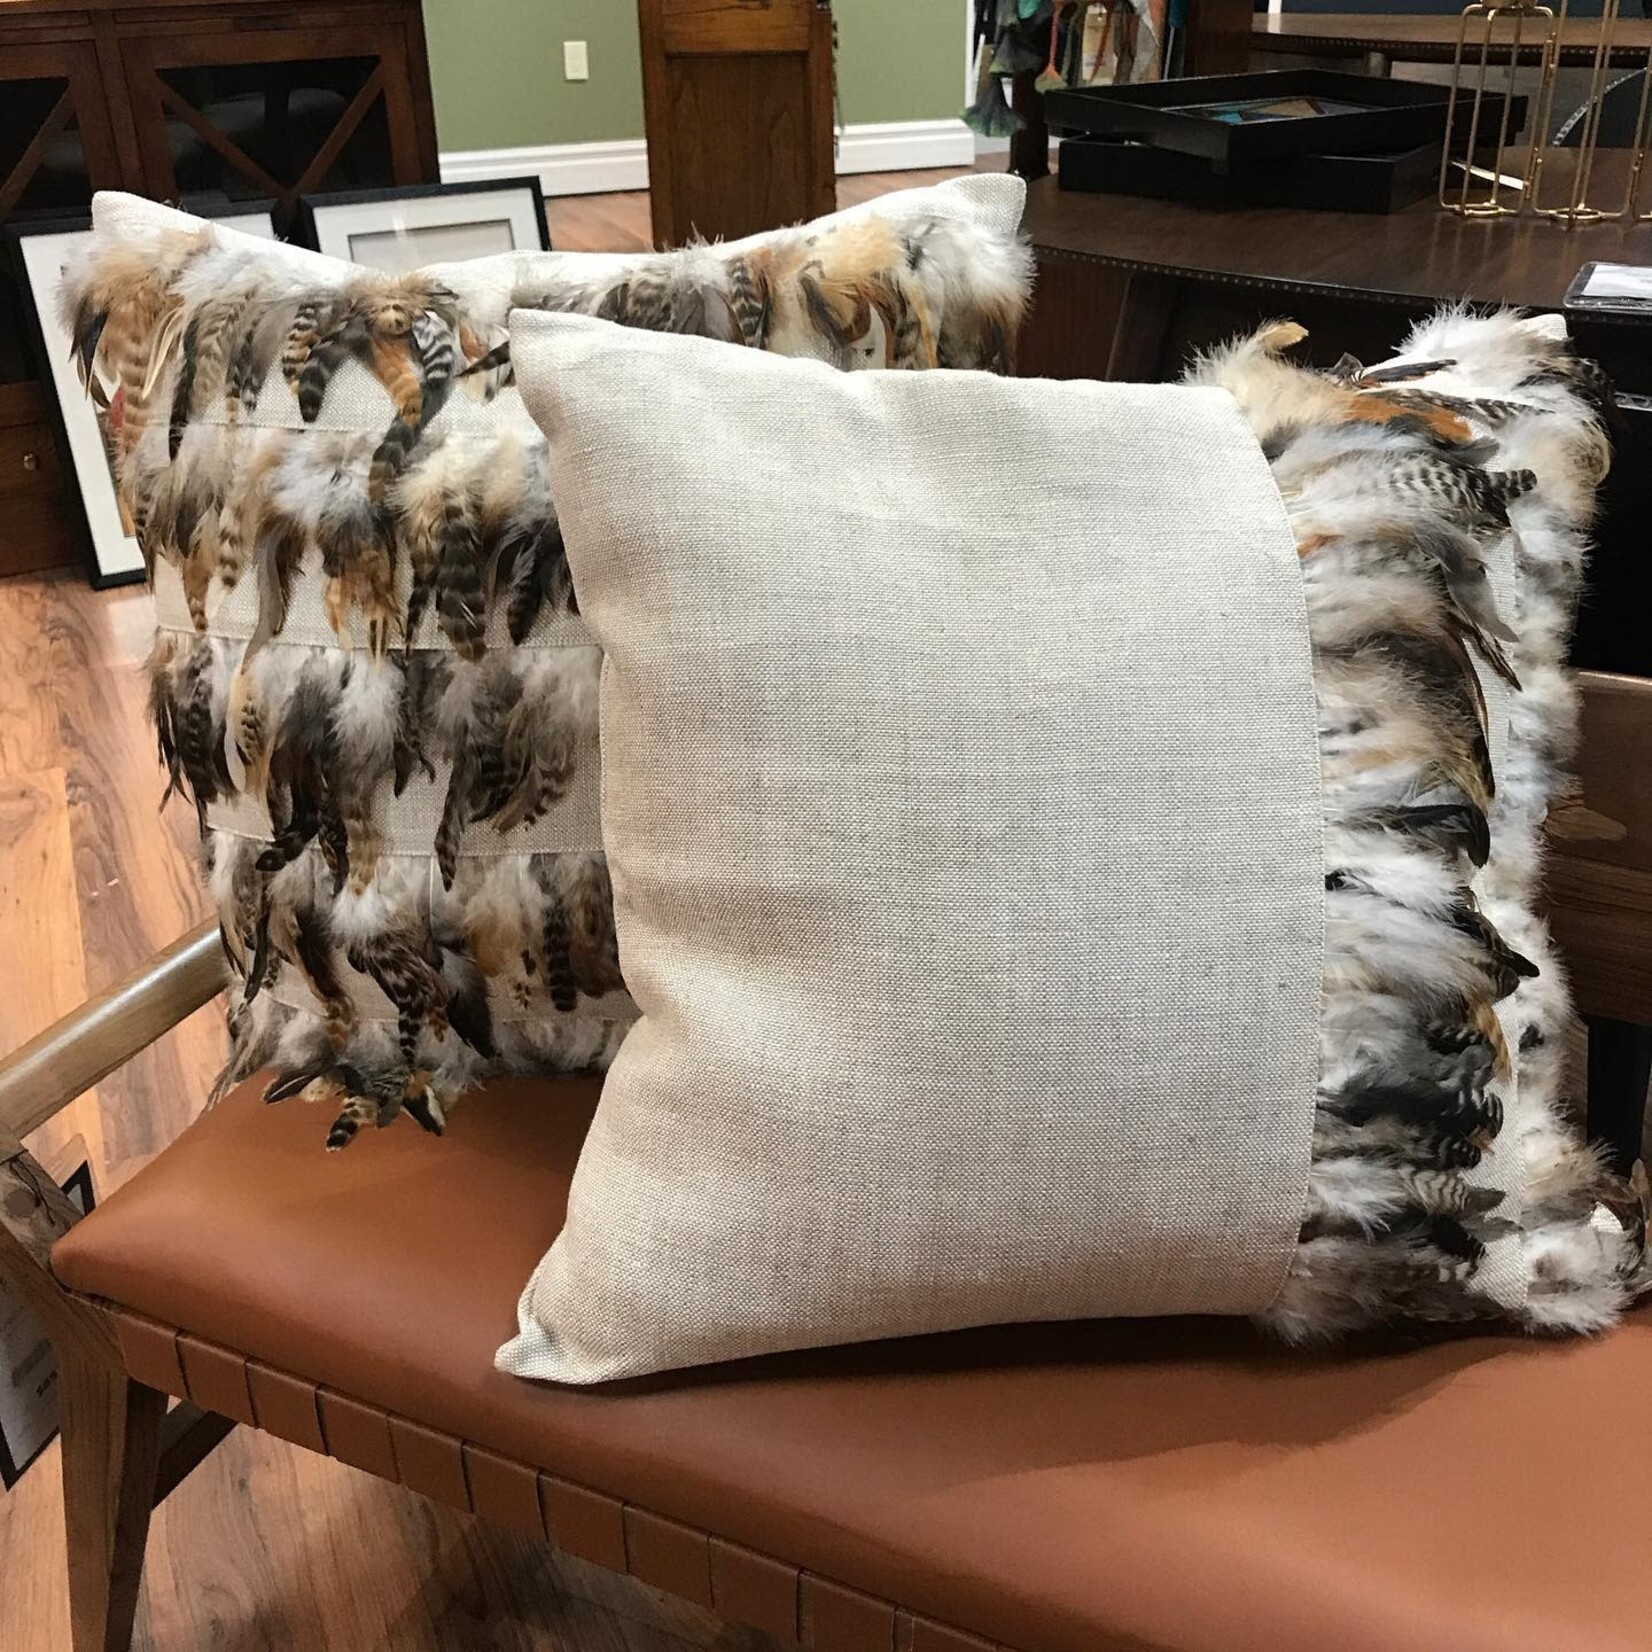 Decorum Home Corp Natural Linen Asymmetric Feather Pillow